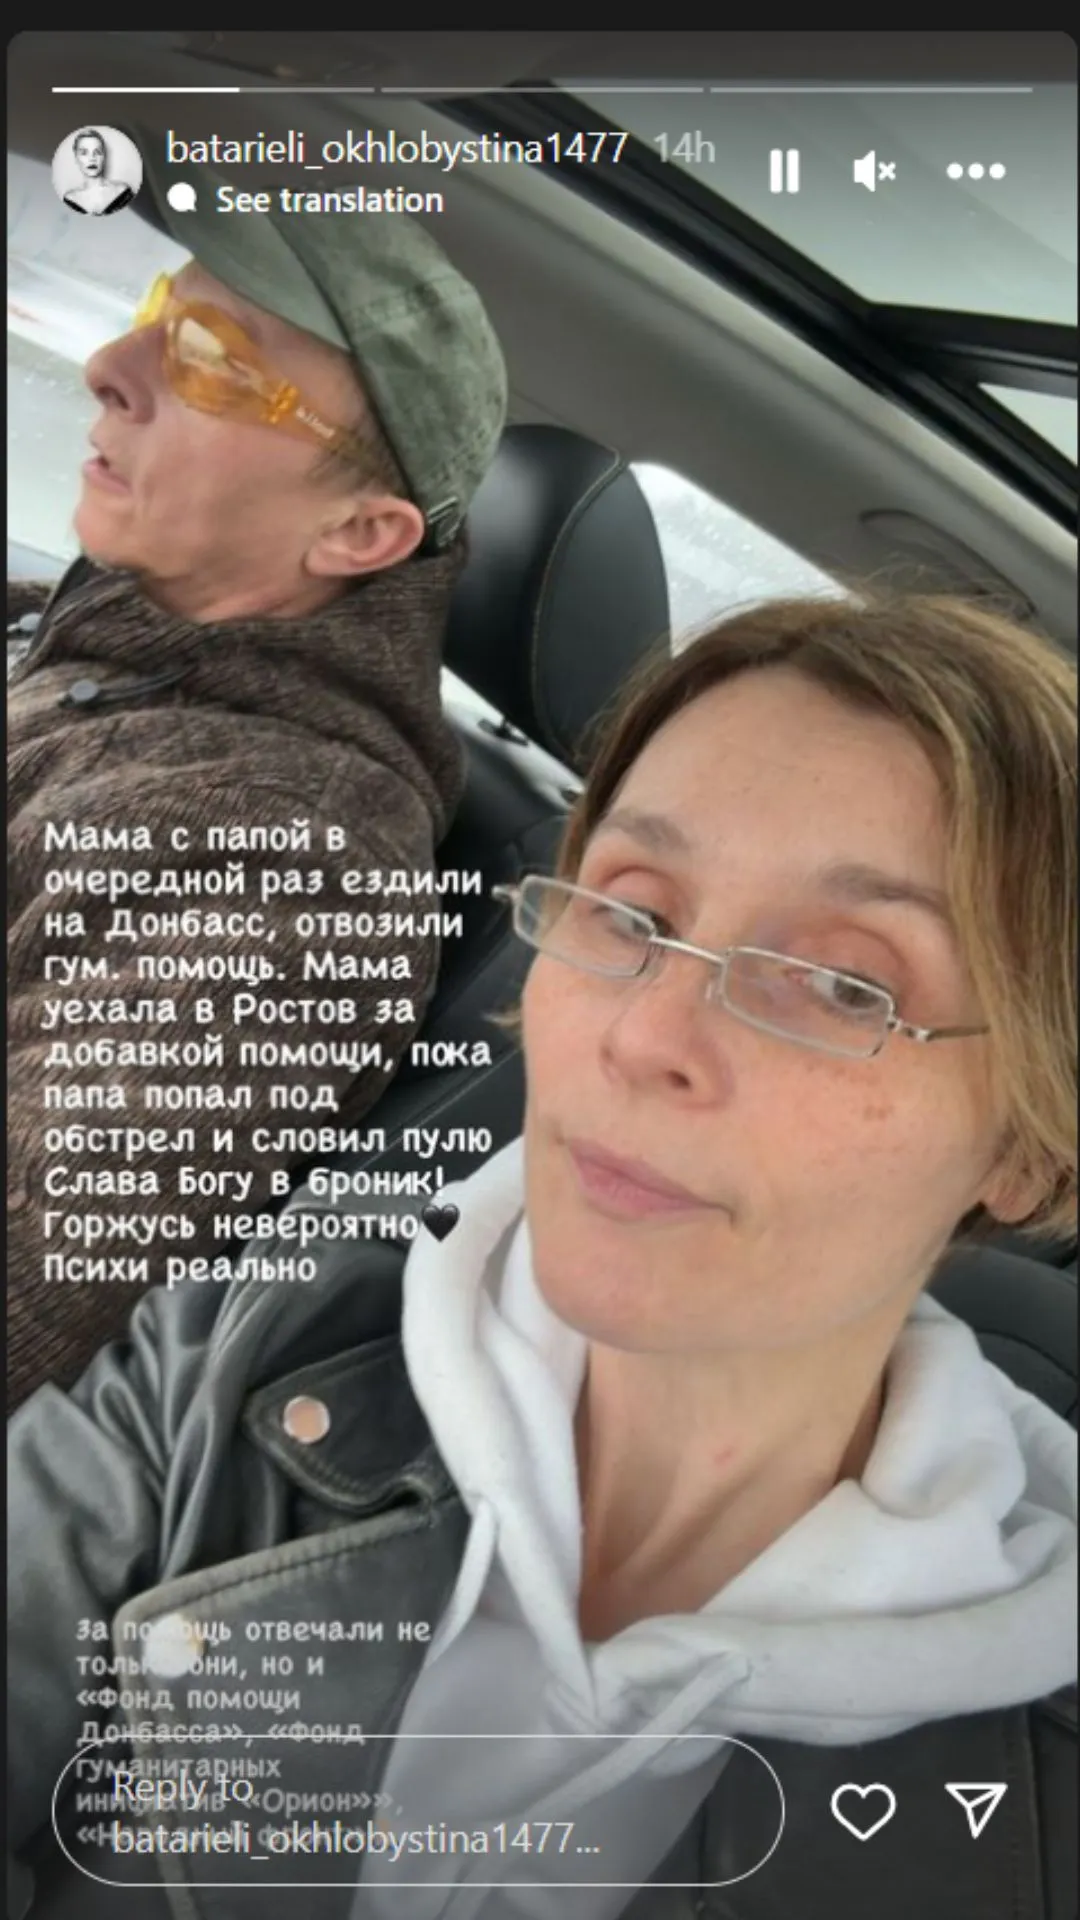 Иван Охлобыстин попал под обстрел во временно оккупированном Донецке